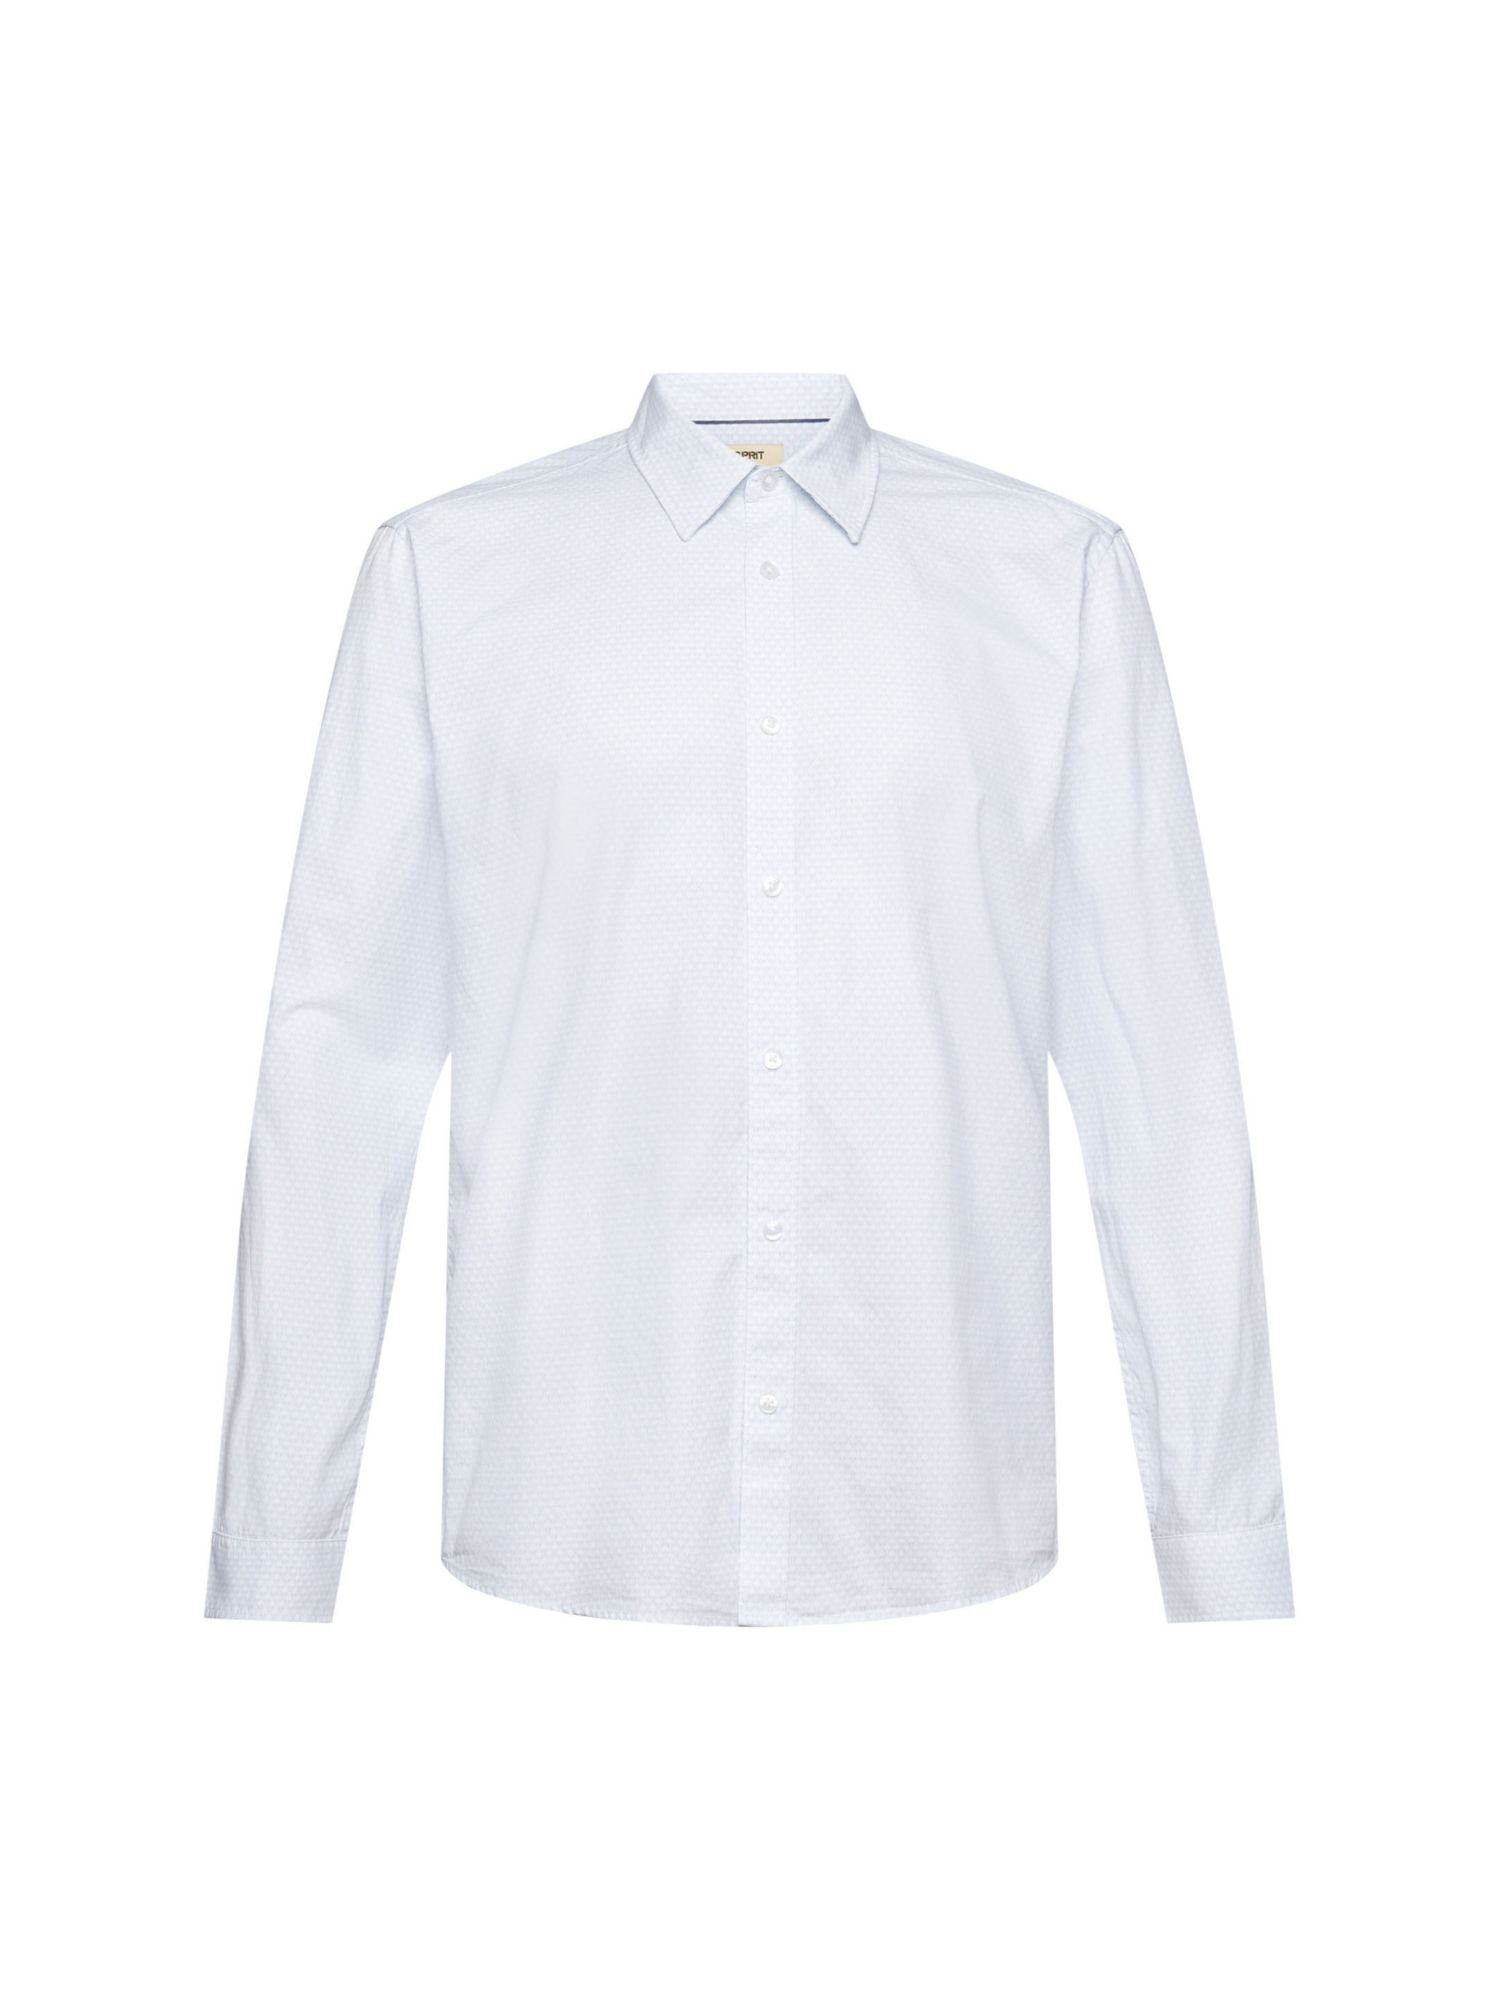 Esprit Langarmhemd Schmal geschnittenes Hemd mit Allover-Dessin